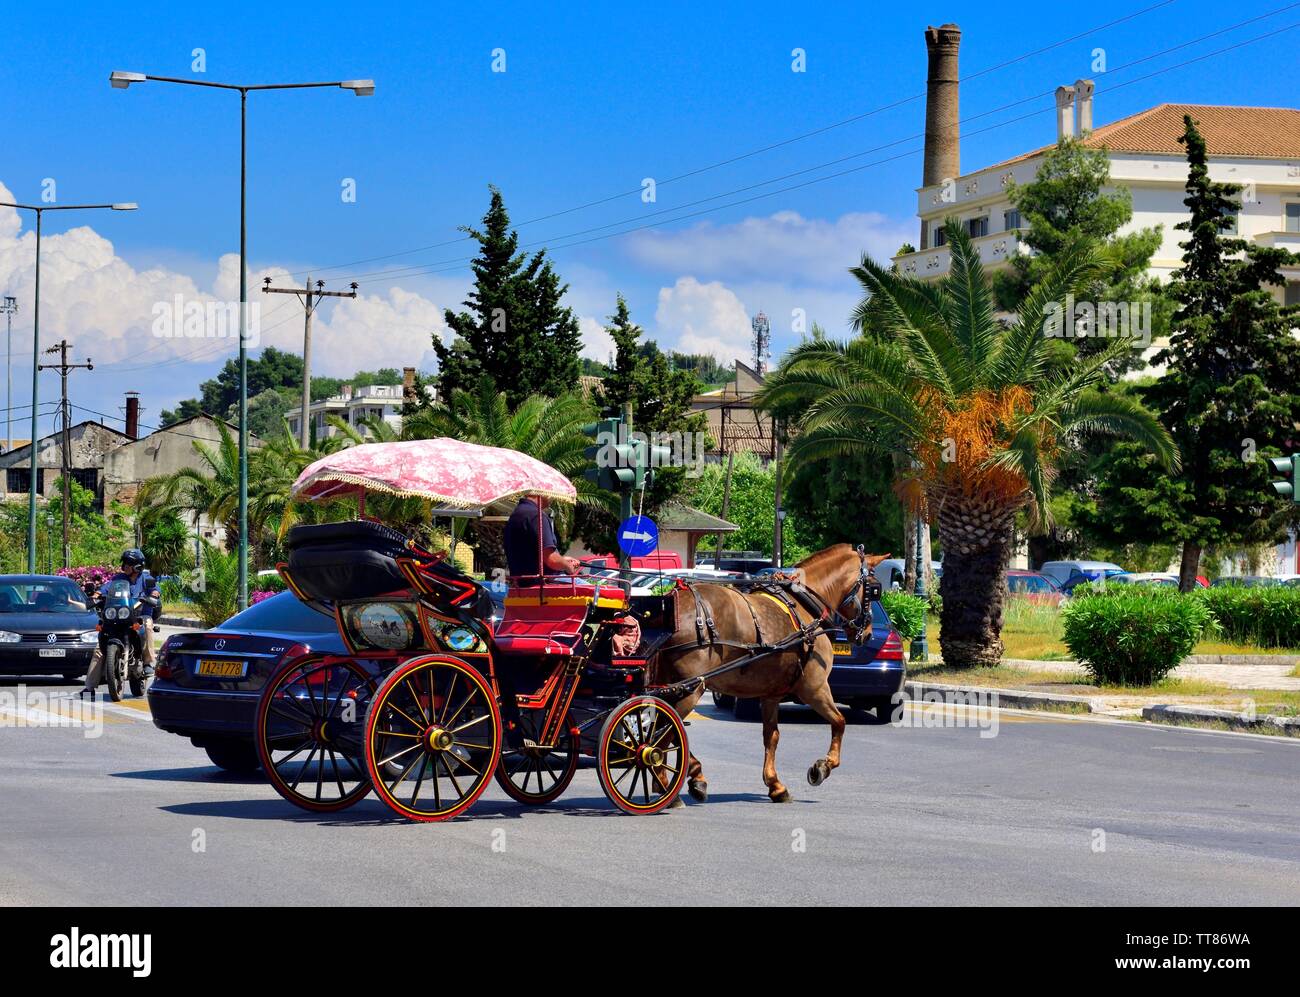 Touristen ein Pferd reiten Kutsche, in Korfu Stadt, mit Straßenverkehr, Kerkyra, griechische Ionische Inseln, Griechenland Stockfoto